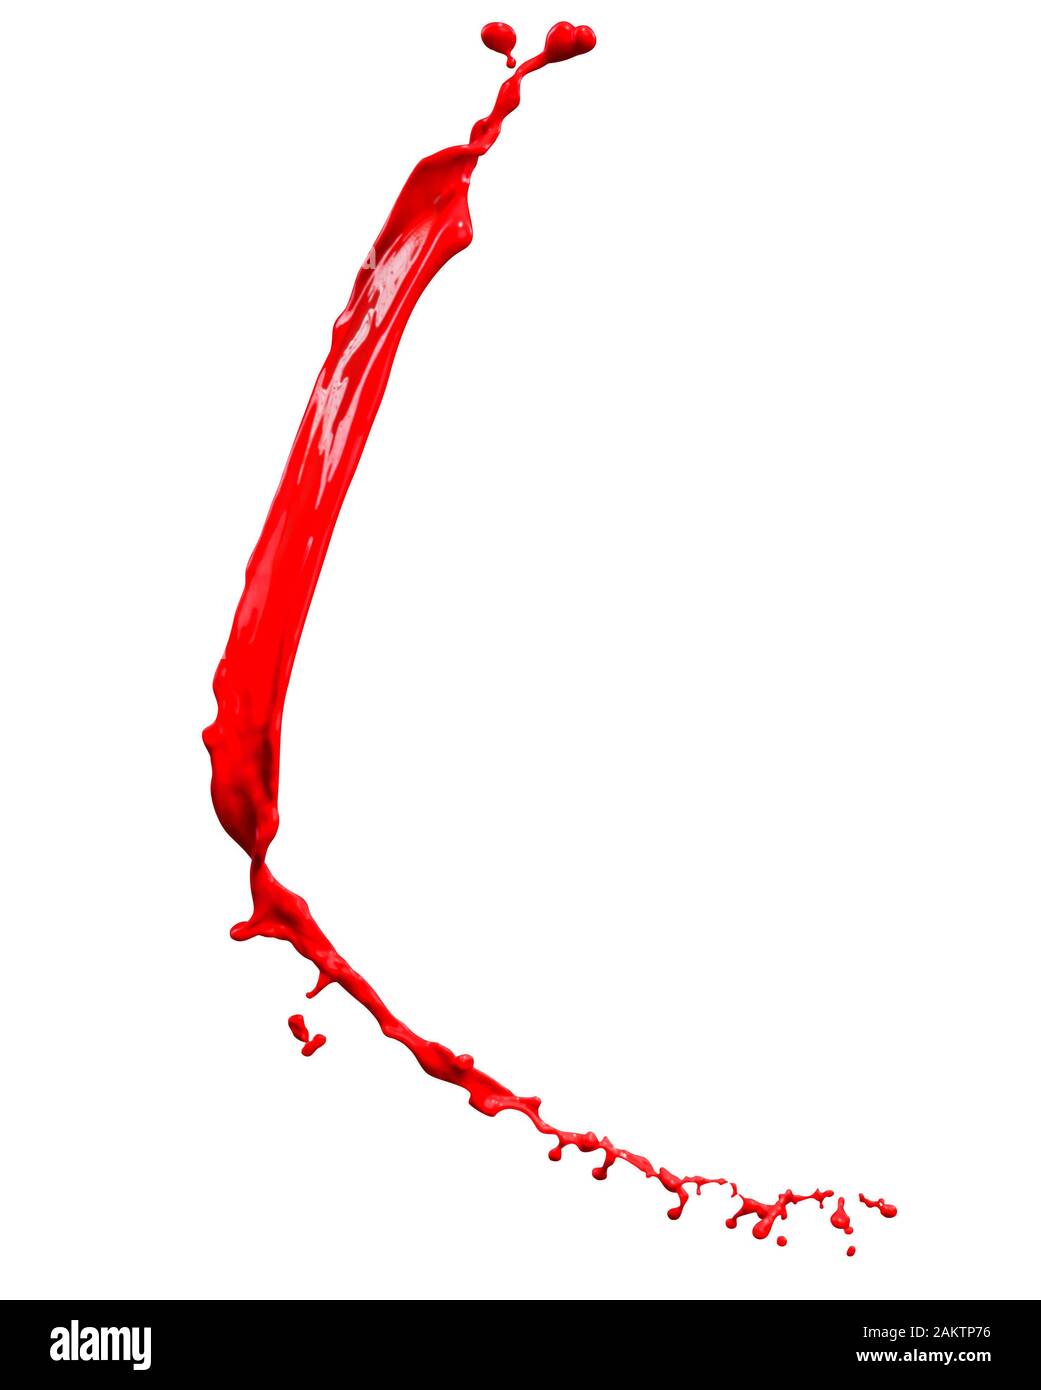 Bella spruzzi di vernice rossa isolato su sfondo bianco Foto Stock